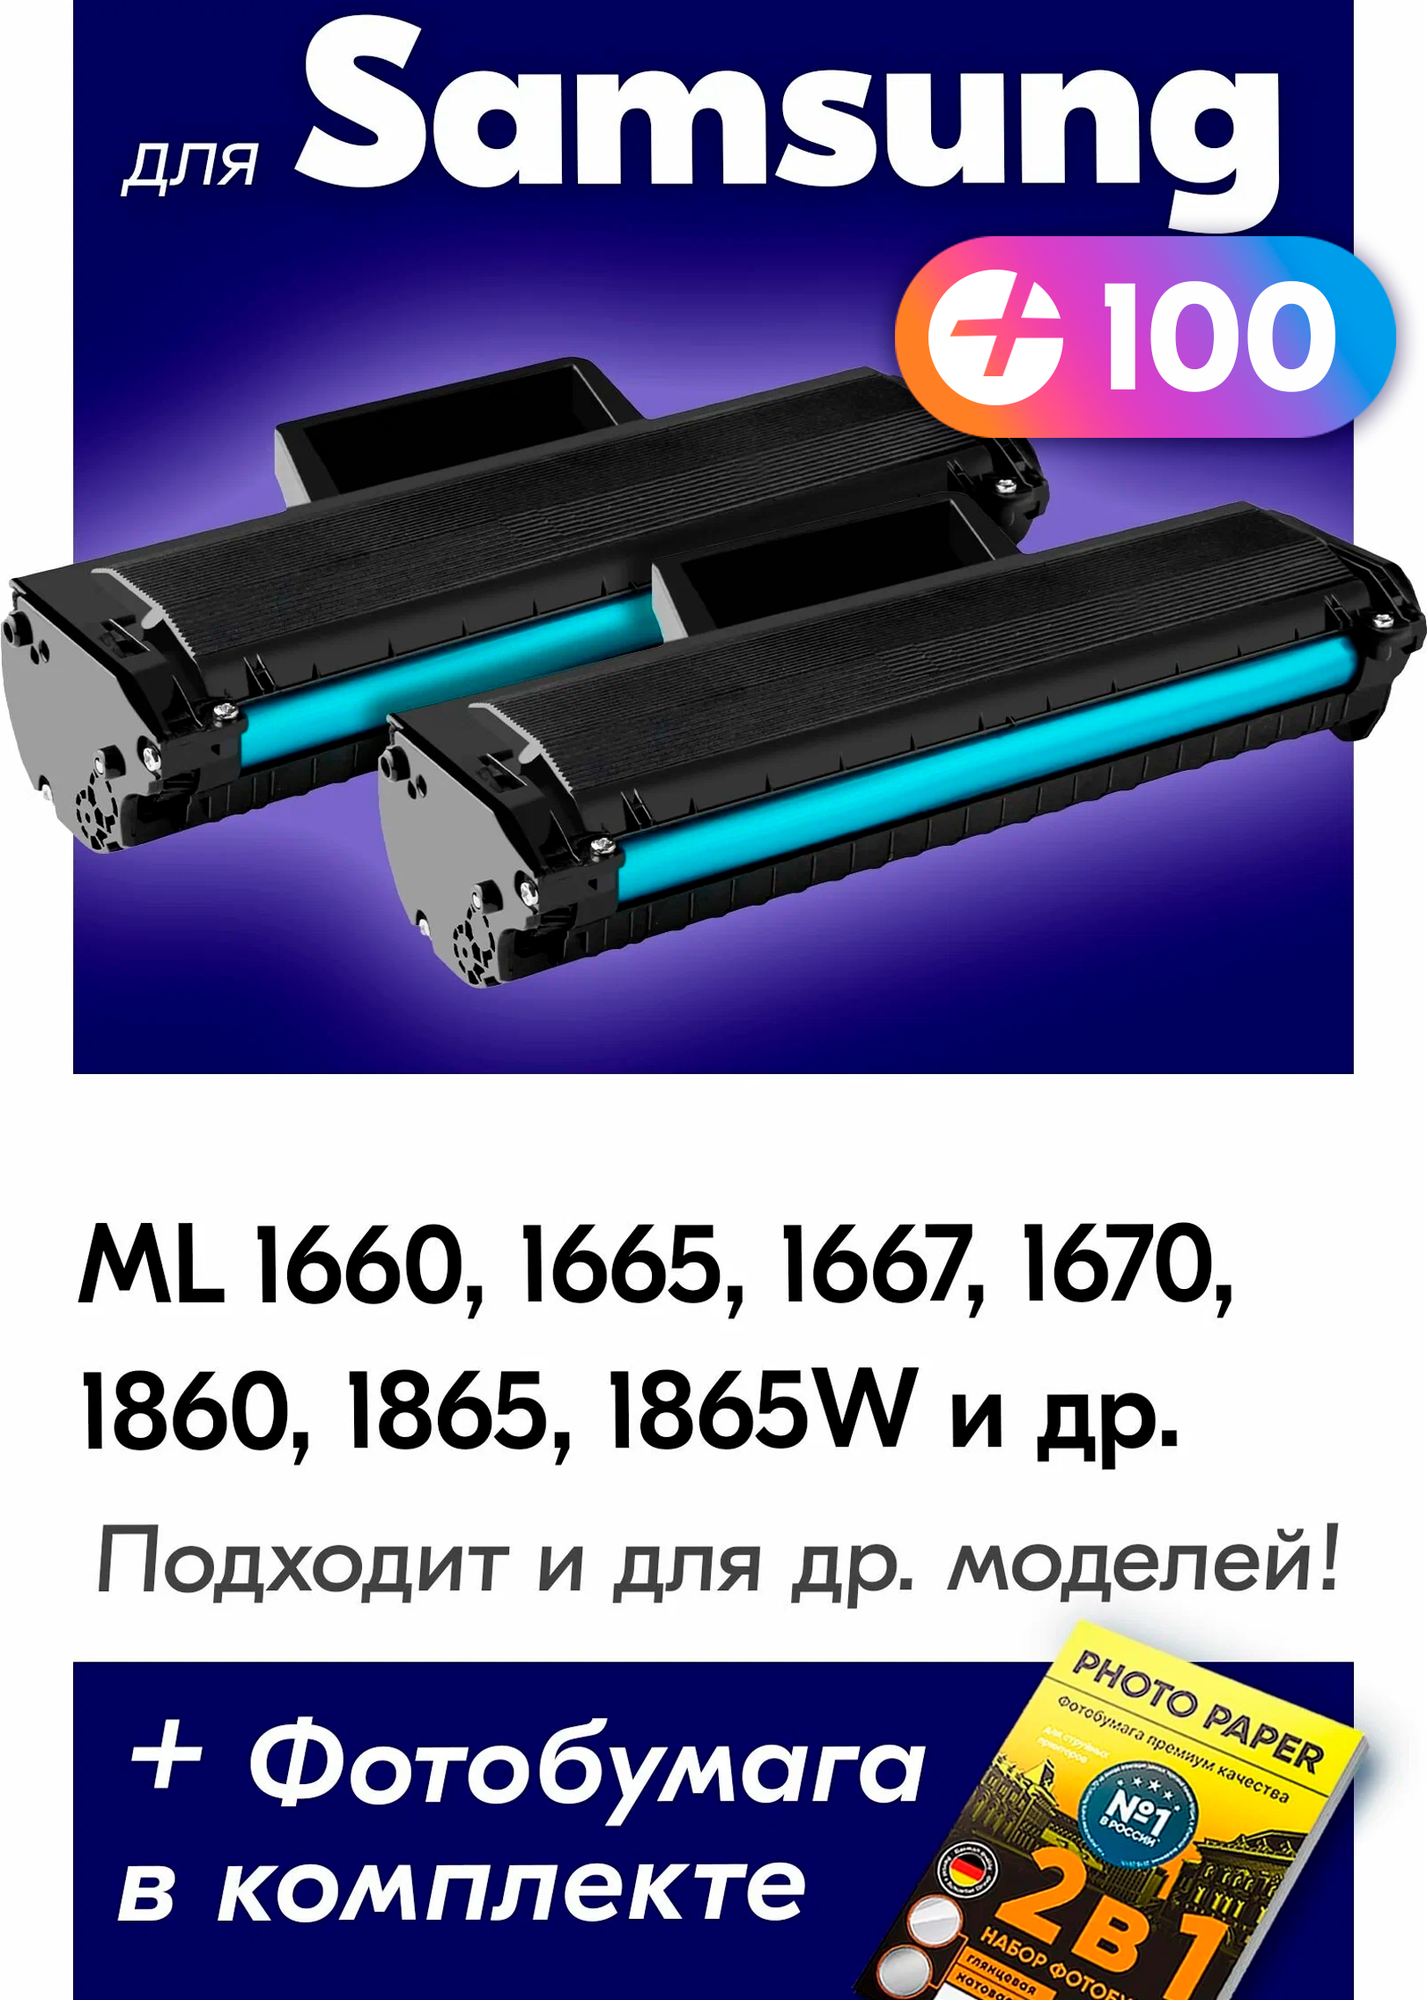 Лазерные картриджи для Samsung ML 1660, 1665, 1667, 1670, 1860, 1865, 1865W, 1867, SCX 3200, 3205, 3205W и др, с краской черные новые , 1500 копий